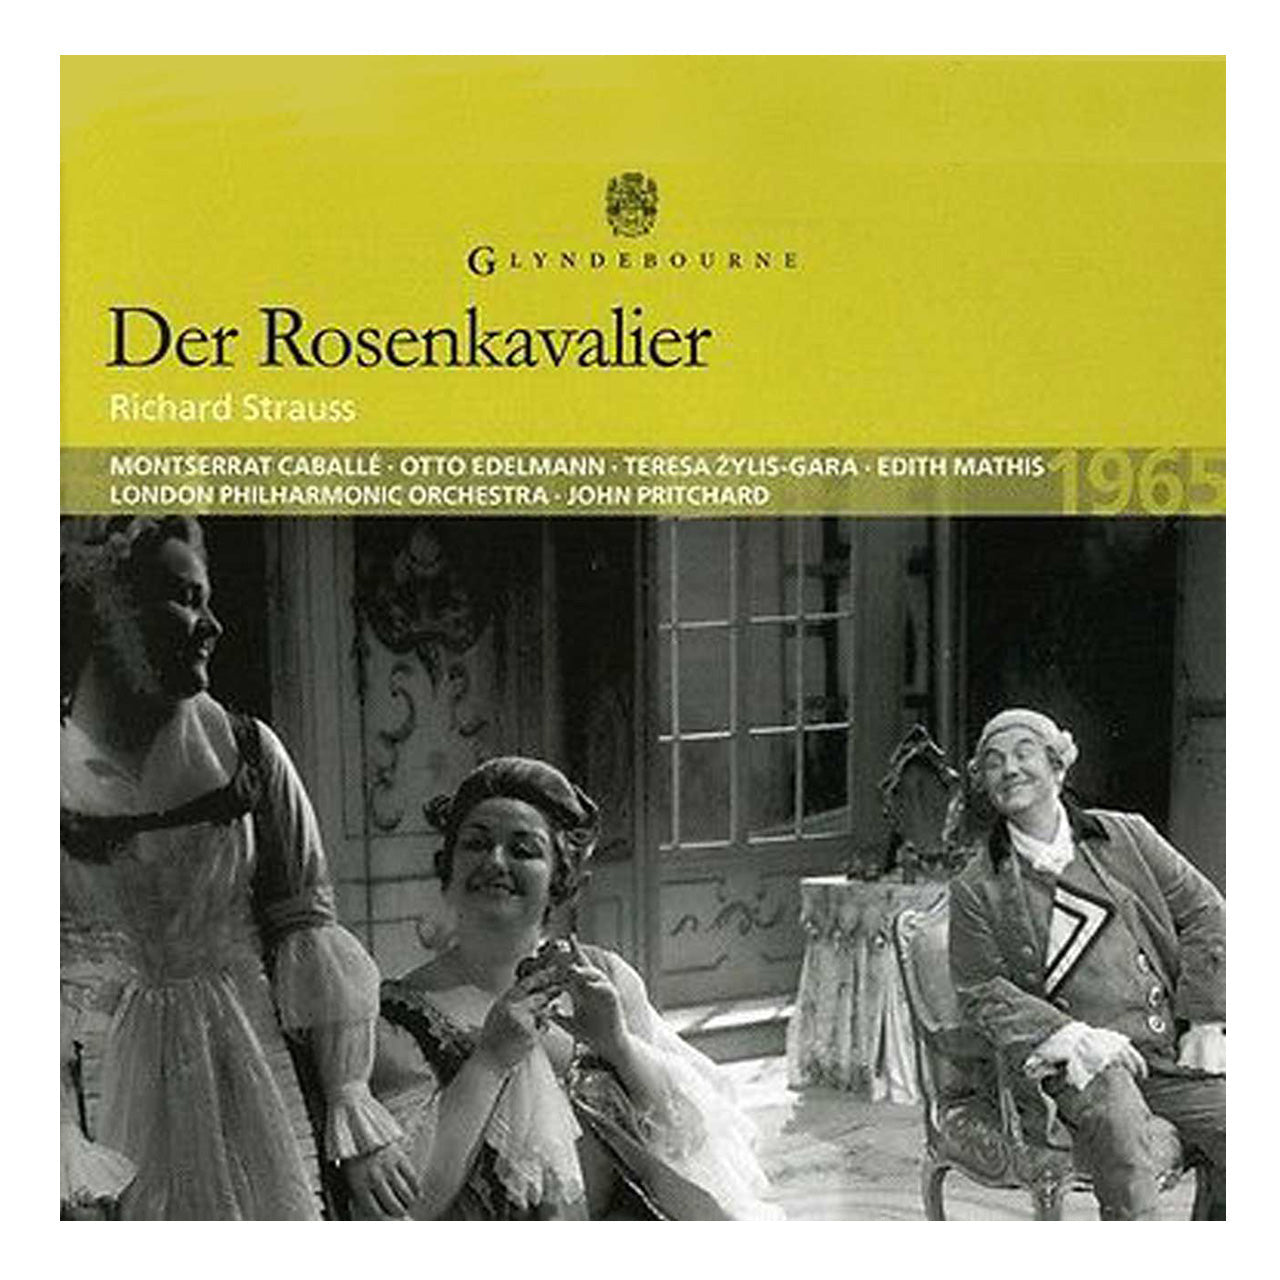 Der Rosenkavalier CD 1965 Glyndebourne Shop